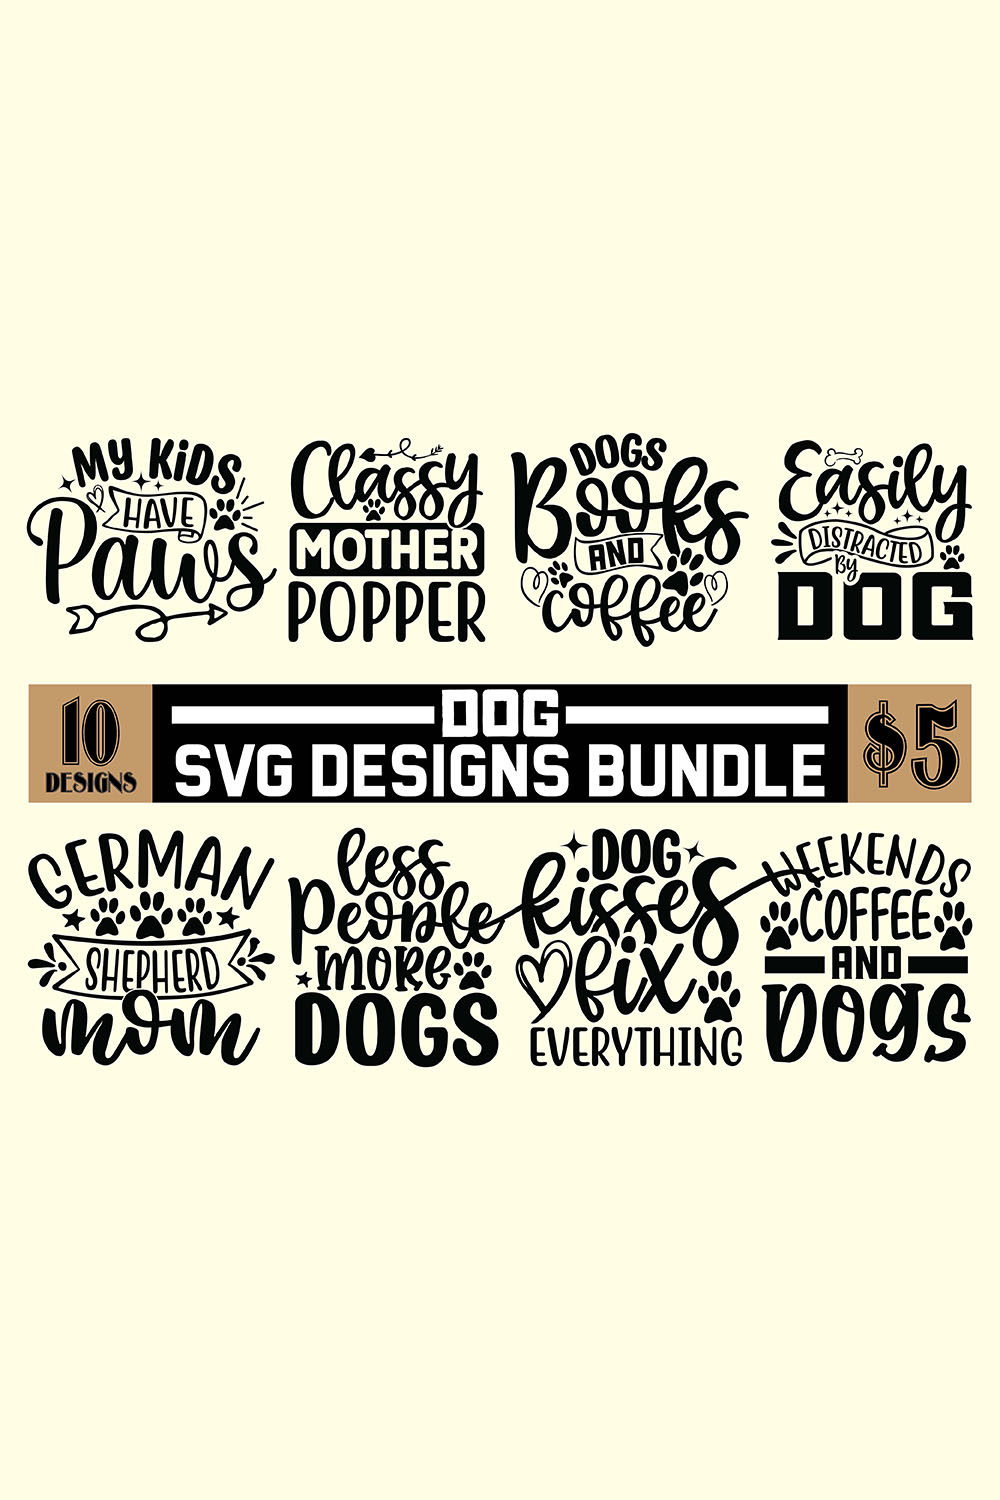 The svg design bundle includes a large number of svg designs.